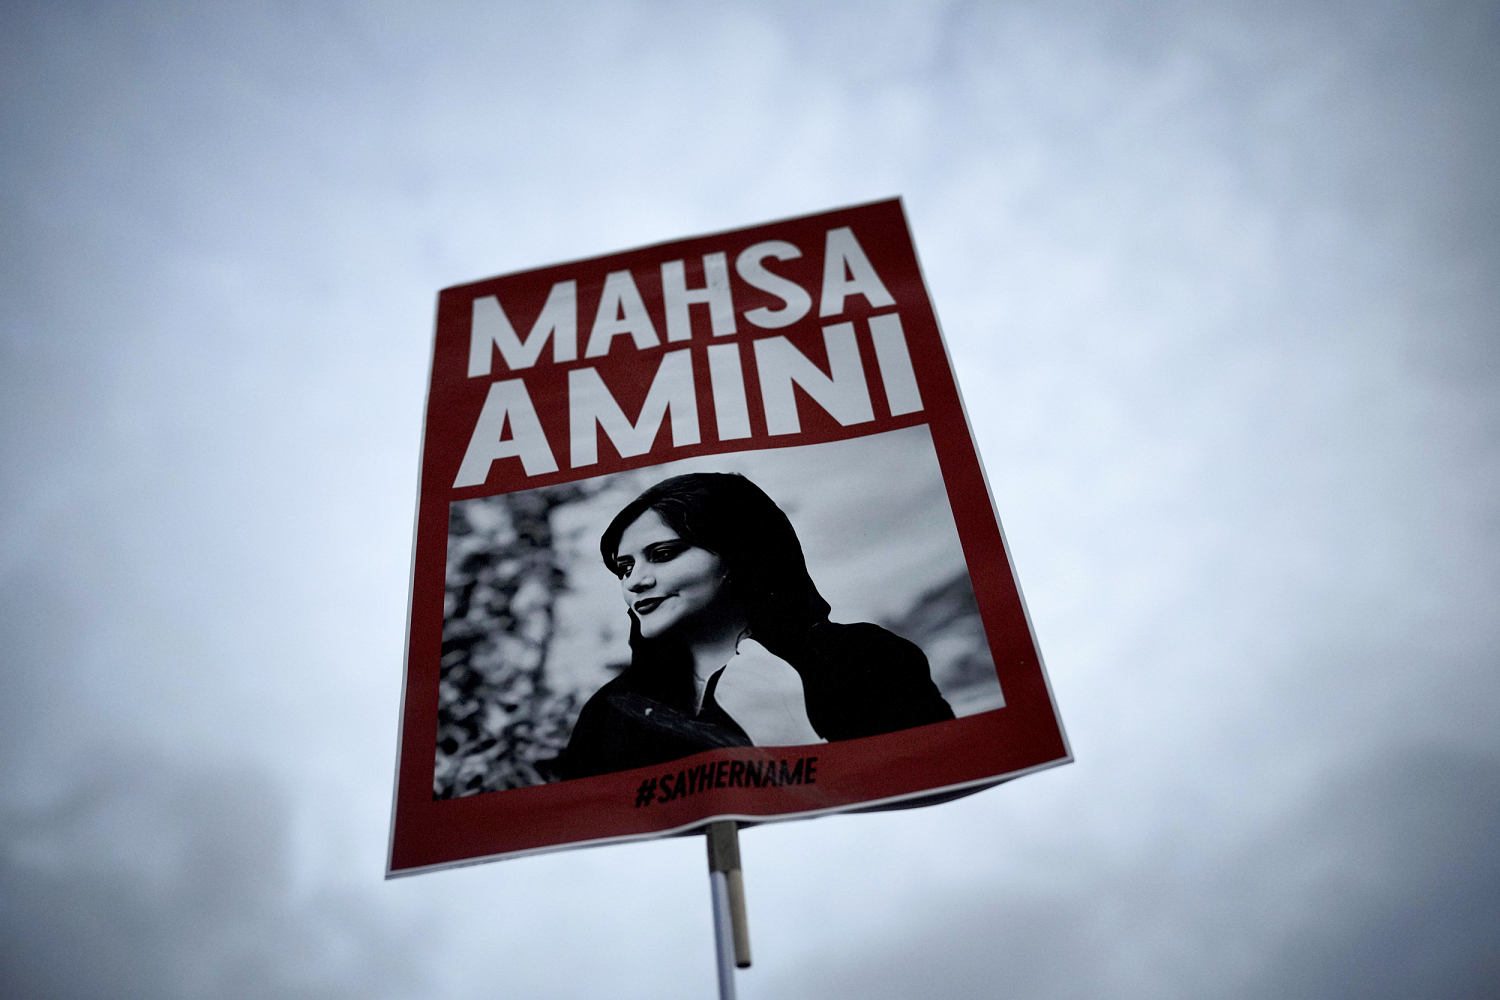 Iran to blame for violence that killed Mahsa Amini, U.N. finds